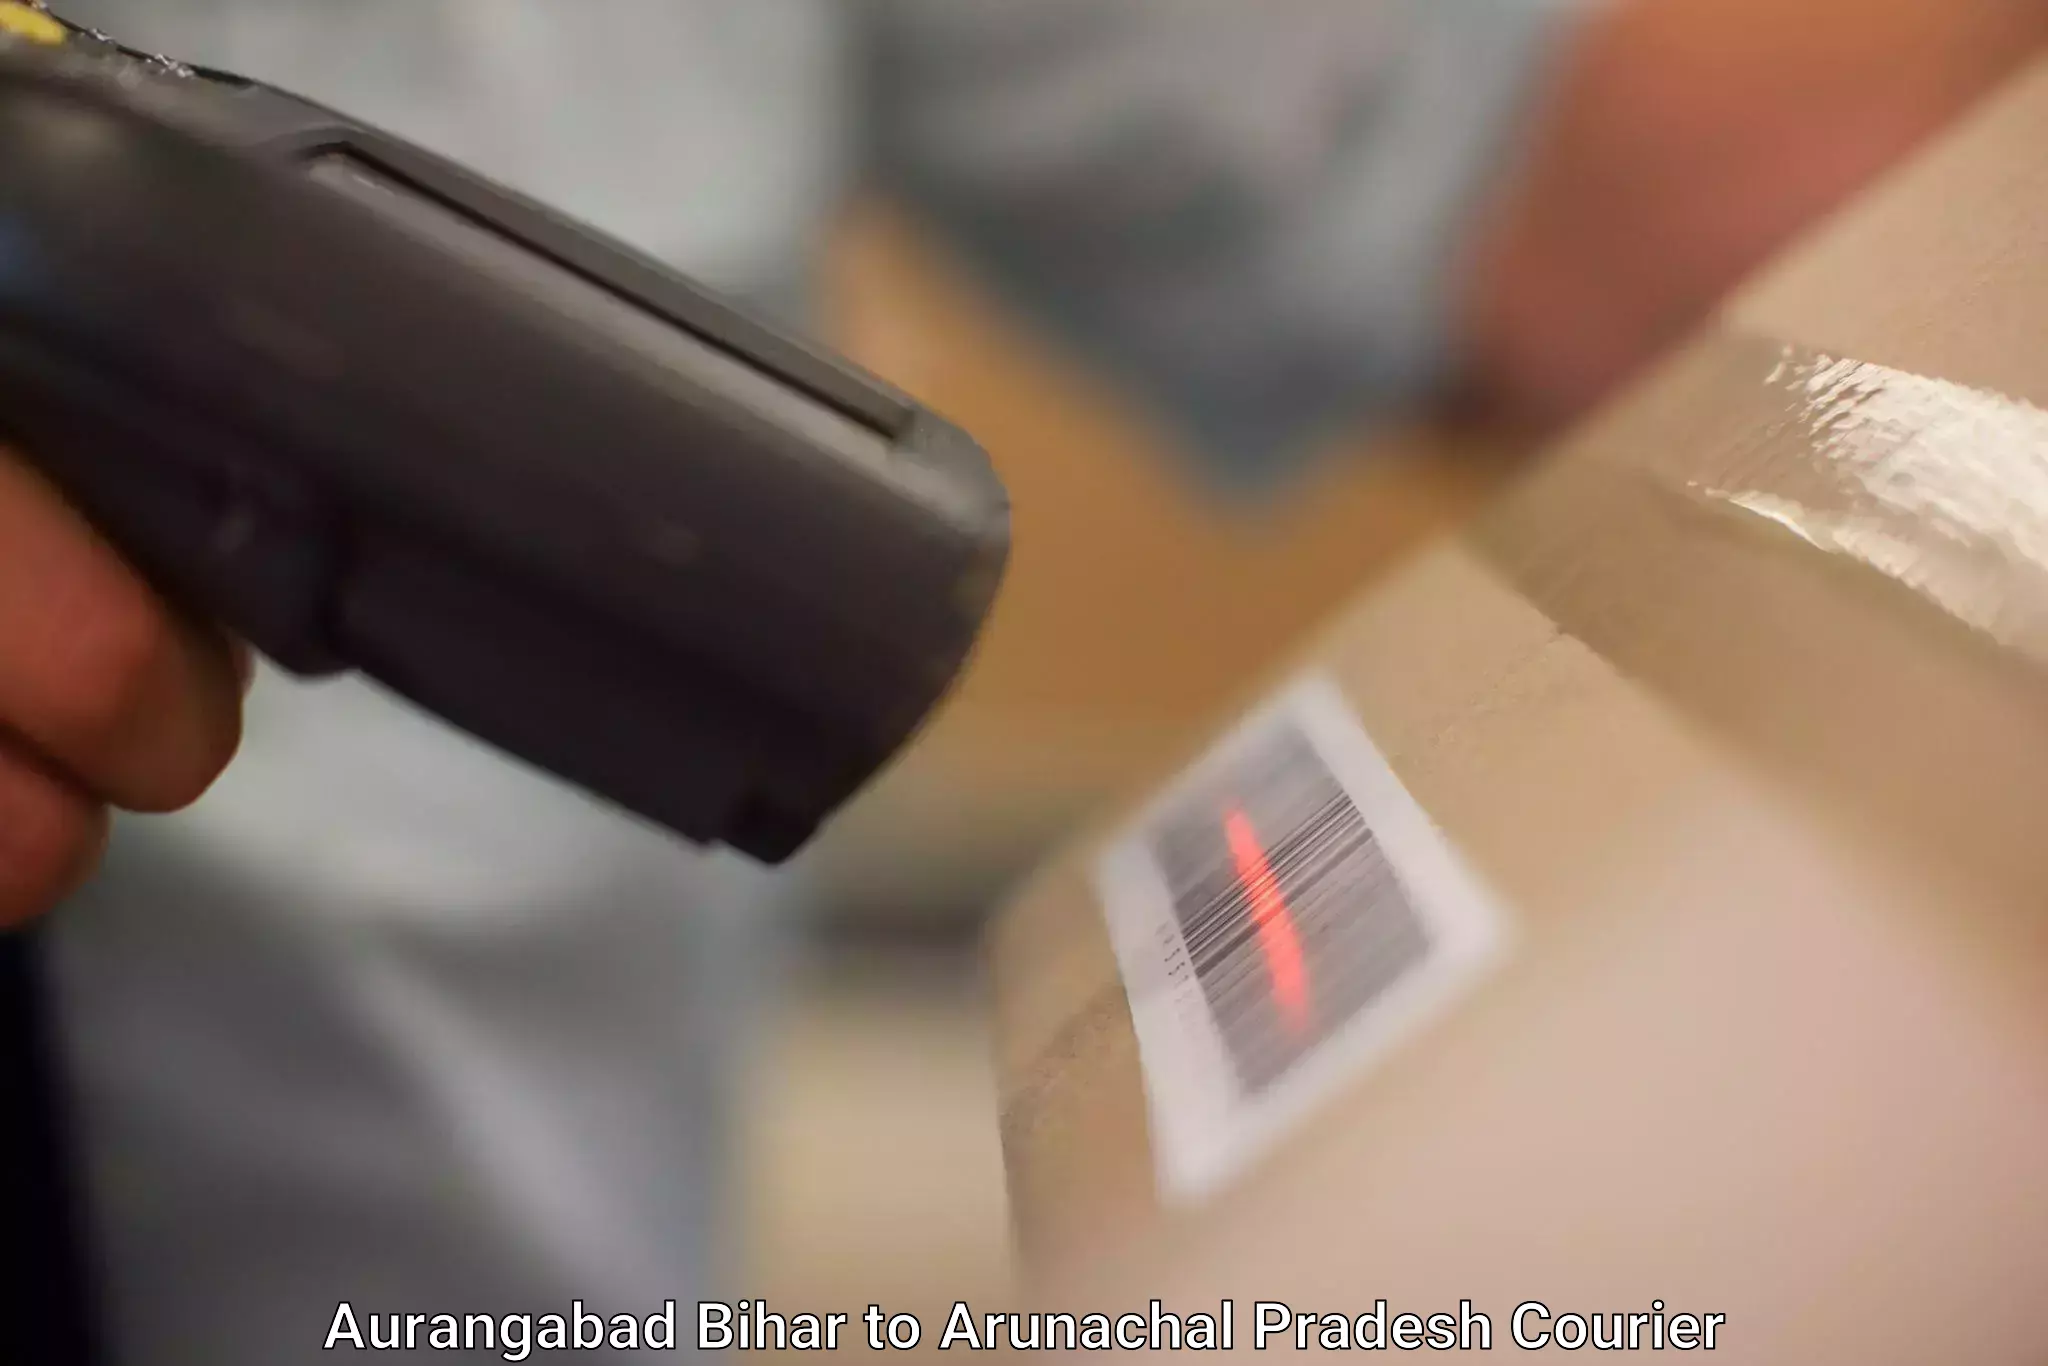 Efficient parcel tracking Aurangabad Bihar to Arunachal Pradesh